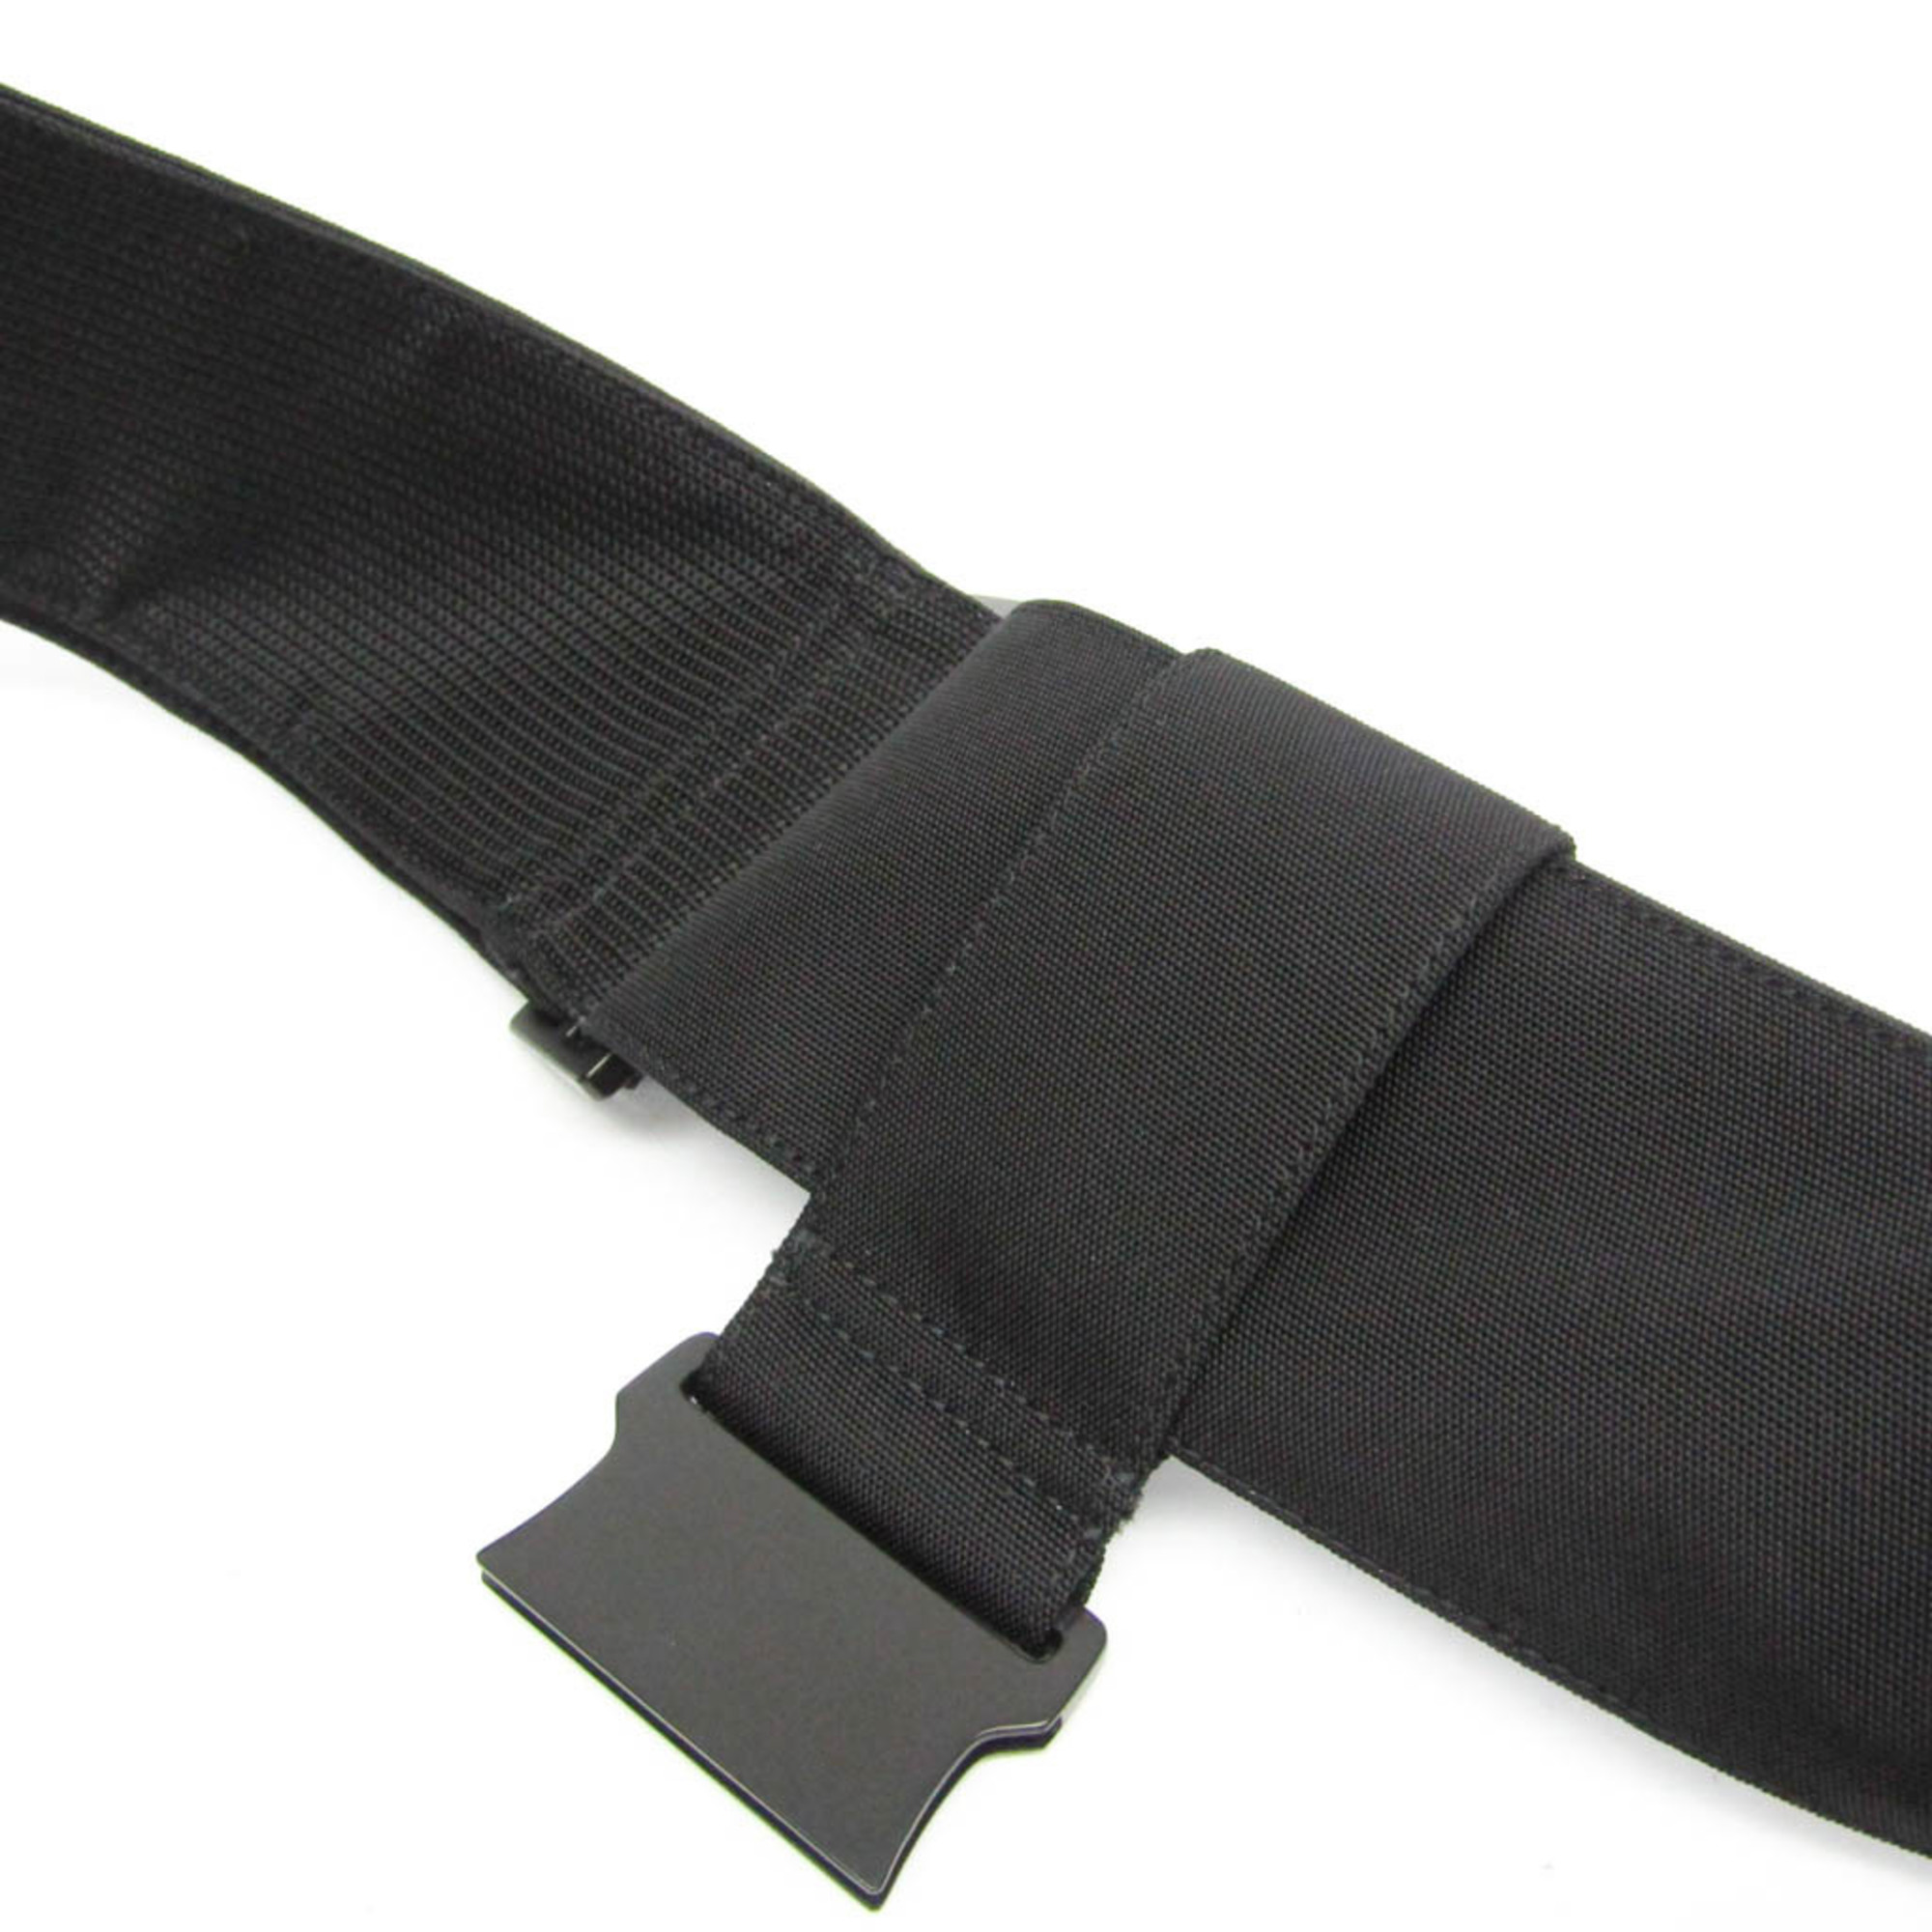 Dunhill L3F65A Men's Leather,Nylon Shoulder Bag Black